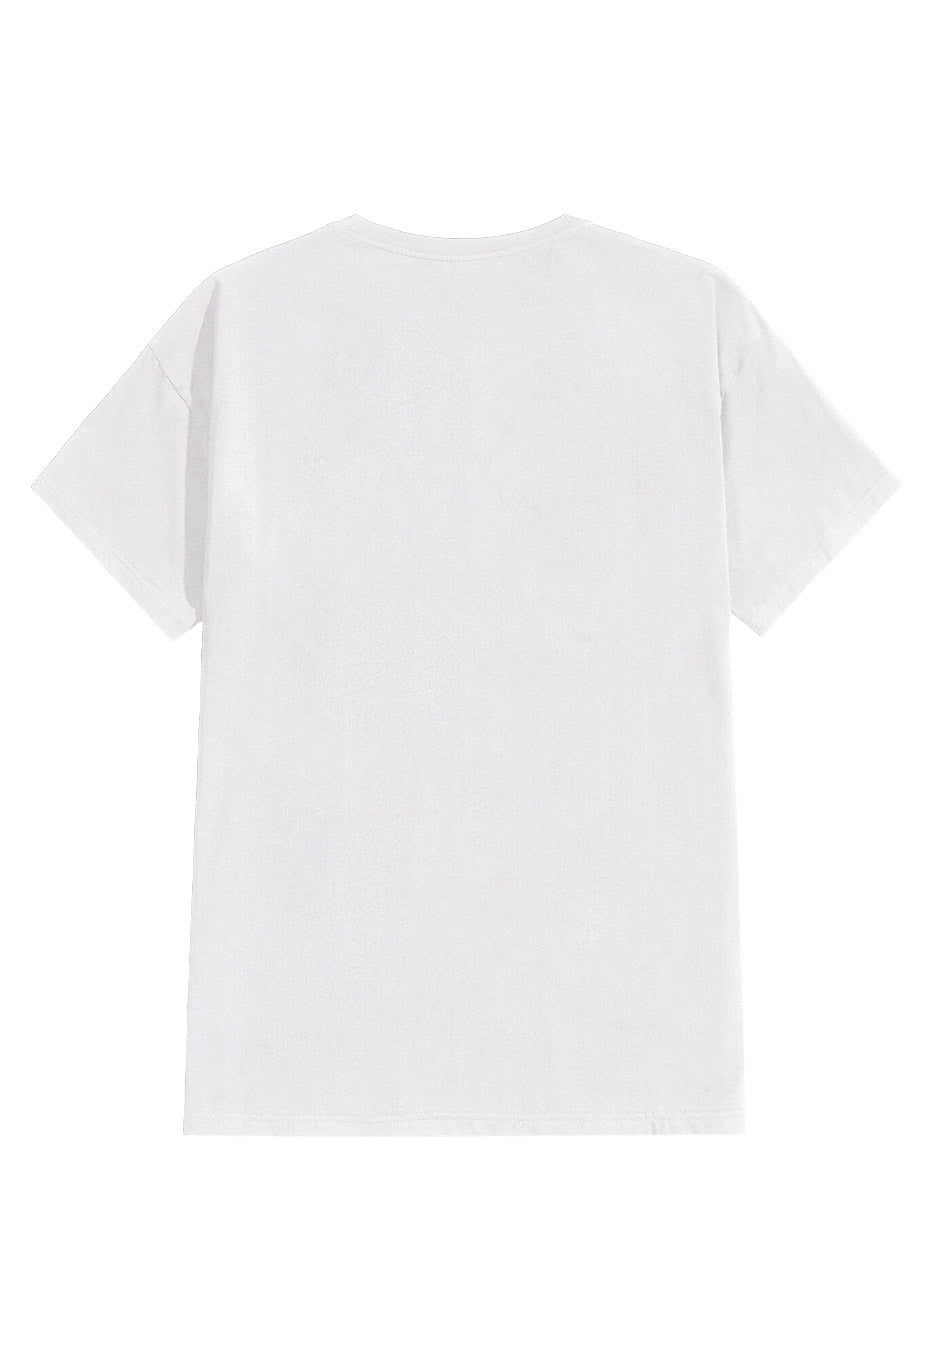 Die Ärzte - Liebe Gegen Rechts White - T-Shirt